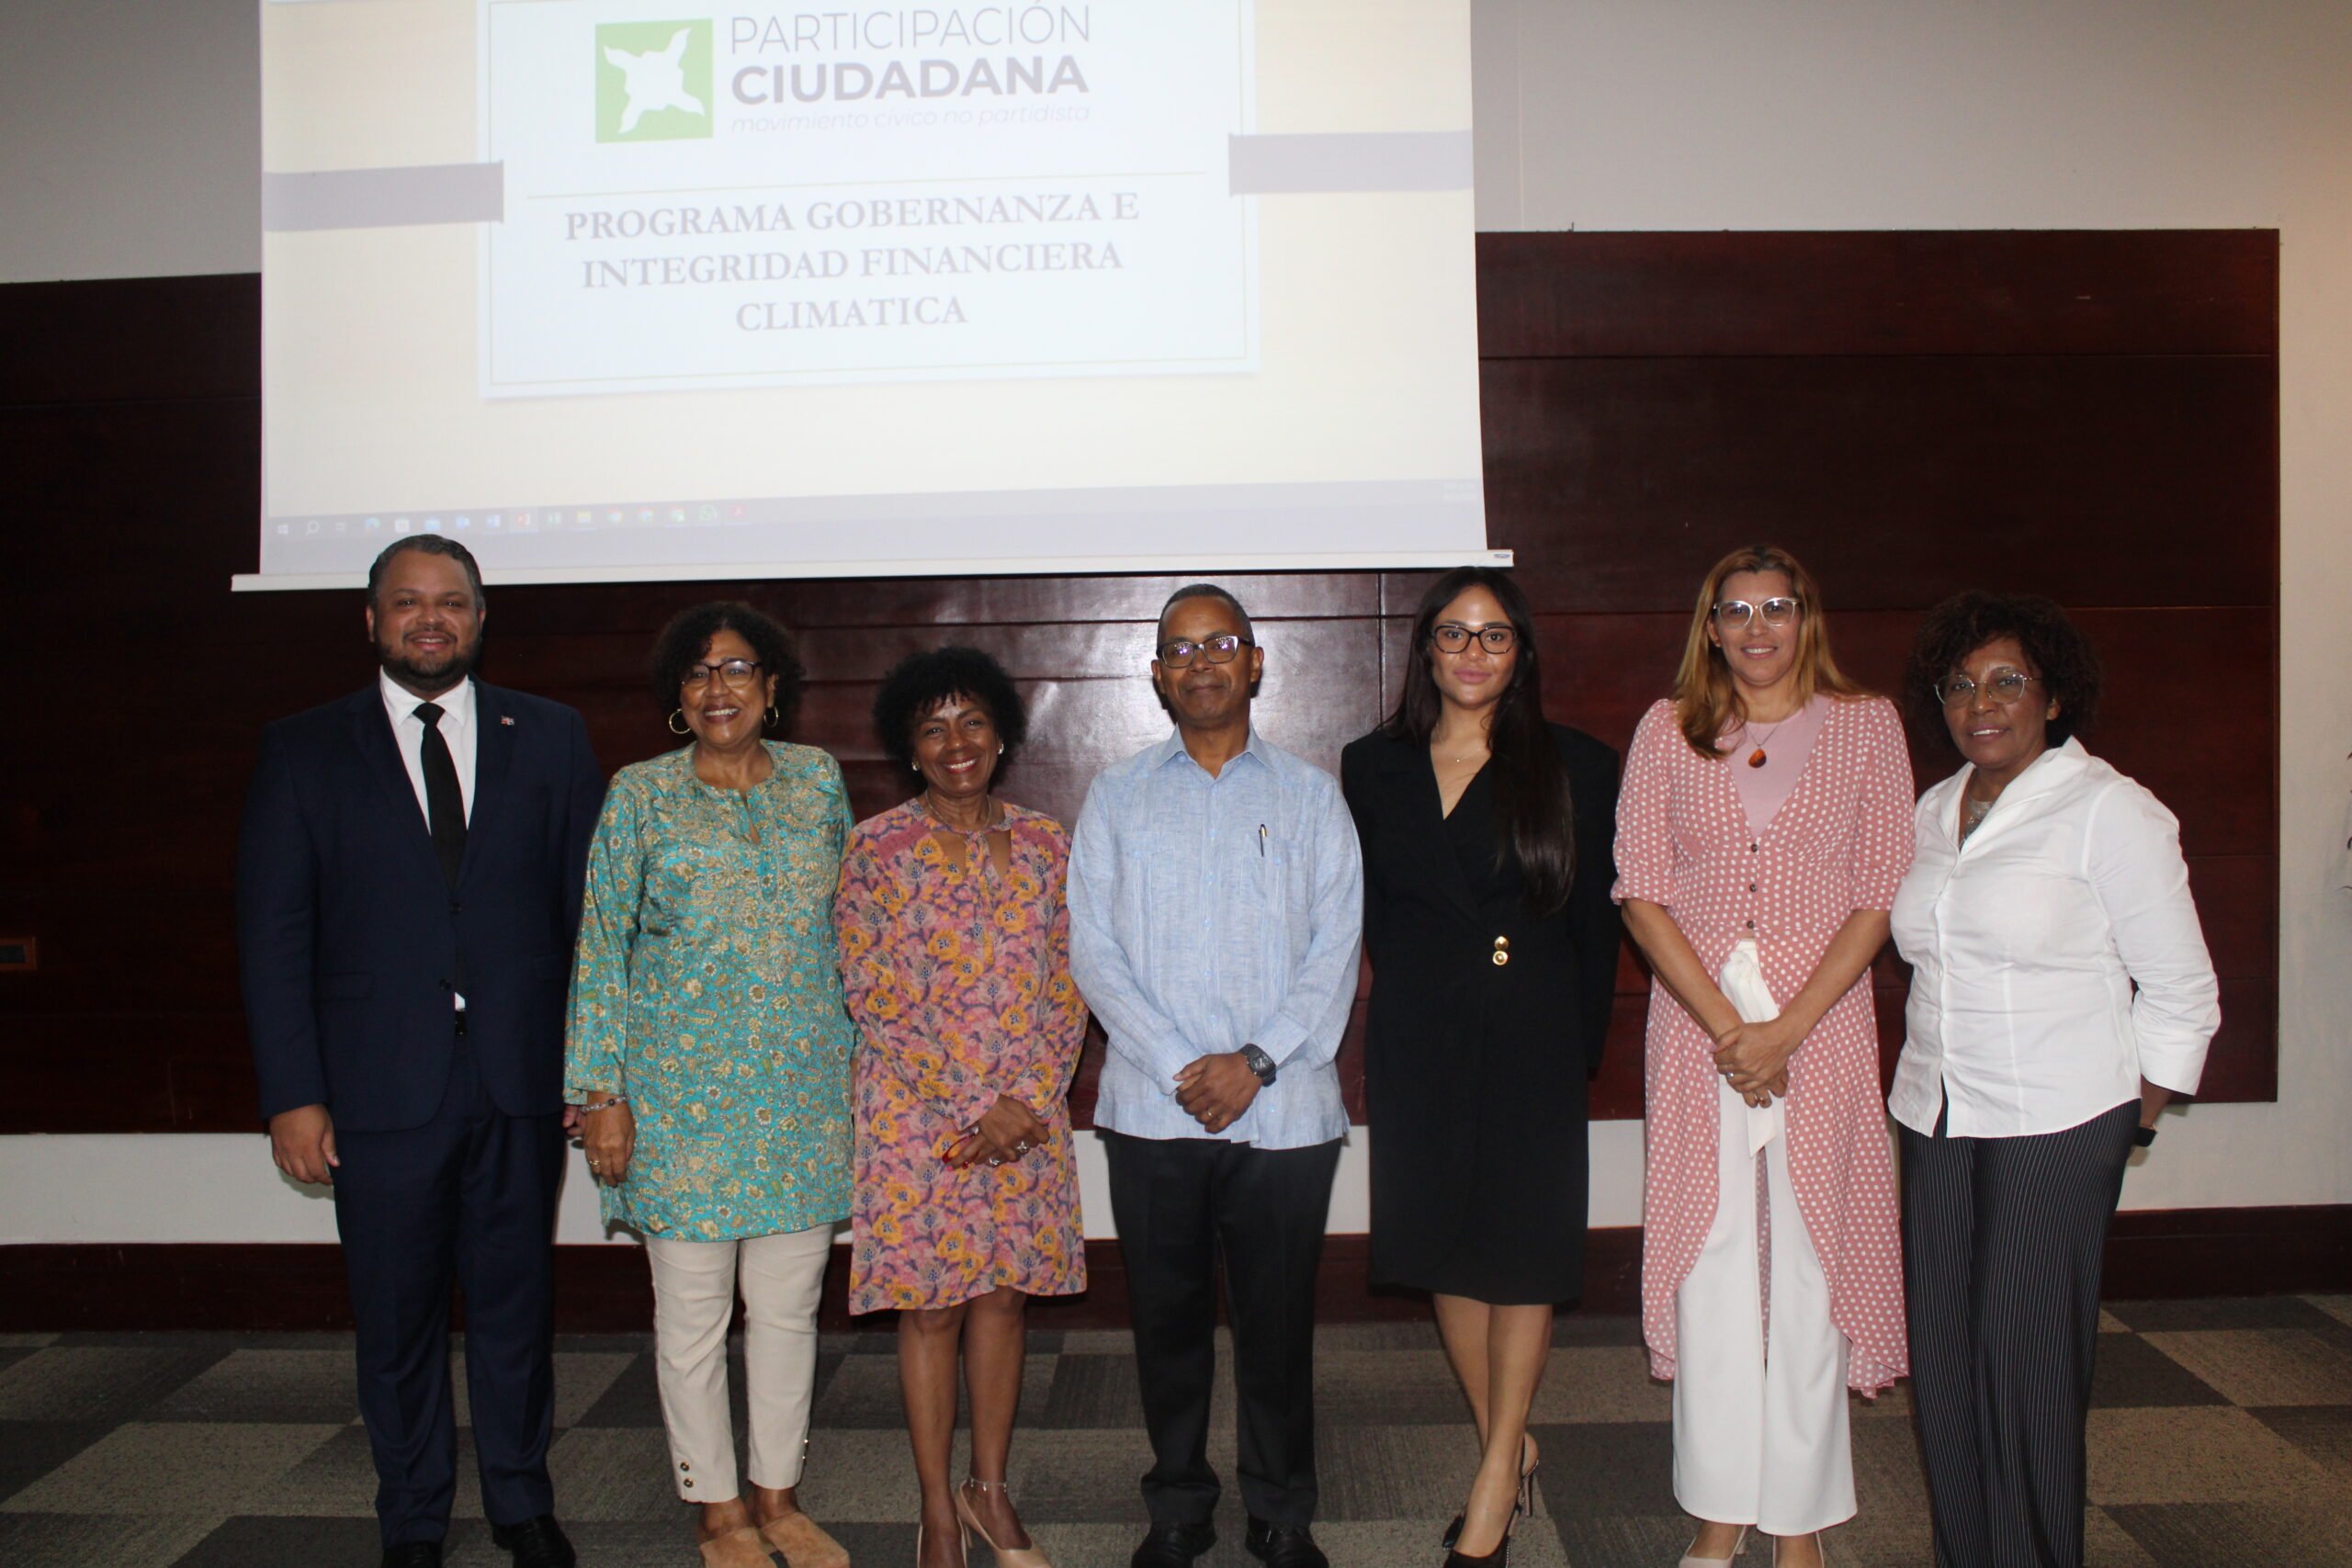 Participación Ciudadana presenta estudios en el marco del programa Gobernanza e Integridad Financiera Climática